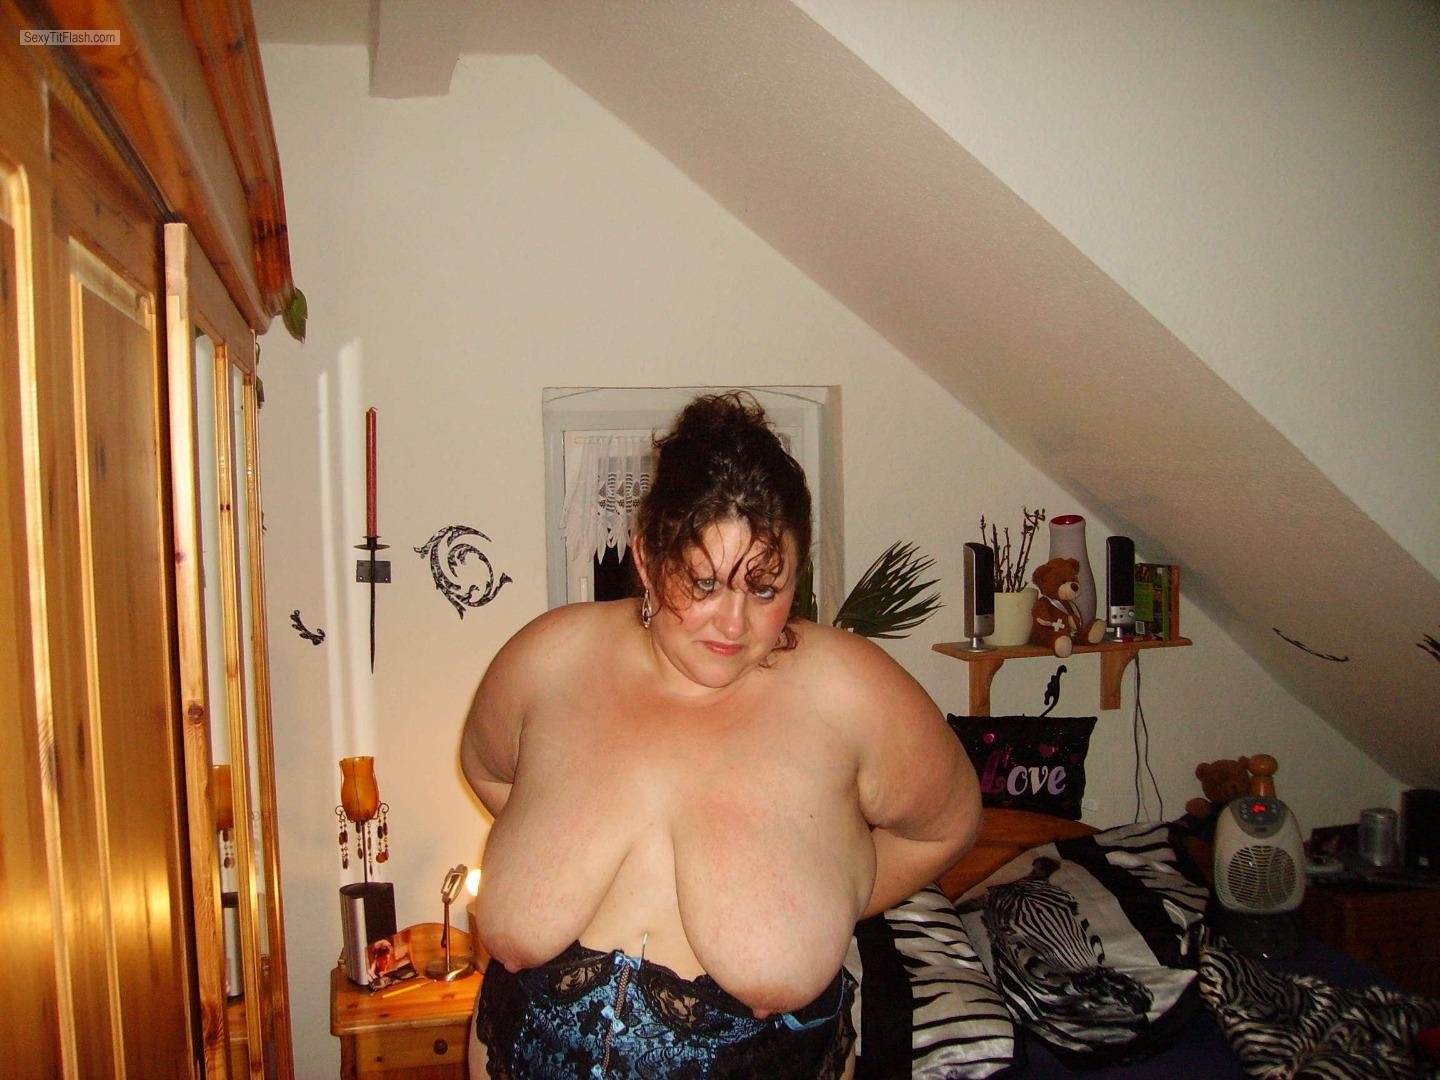 Tit Flash: My Big Tits - Topless Jannie from Germany